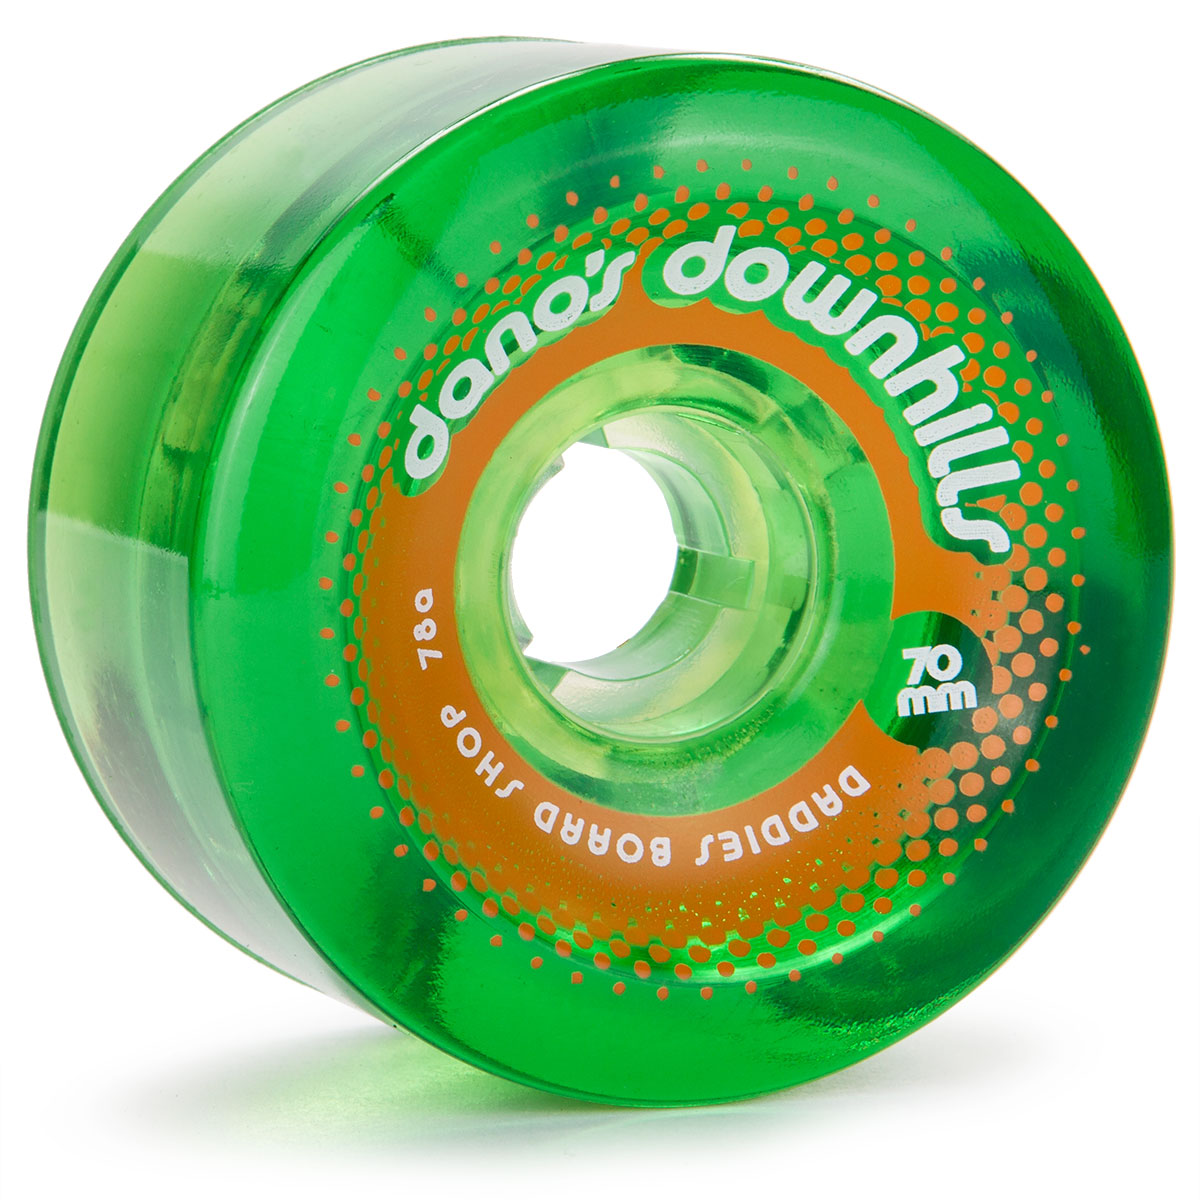 Dano's Downhills Longboard Wheels 70mm - 78a Green image 1